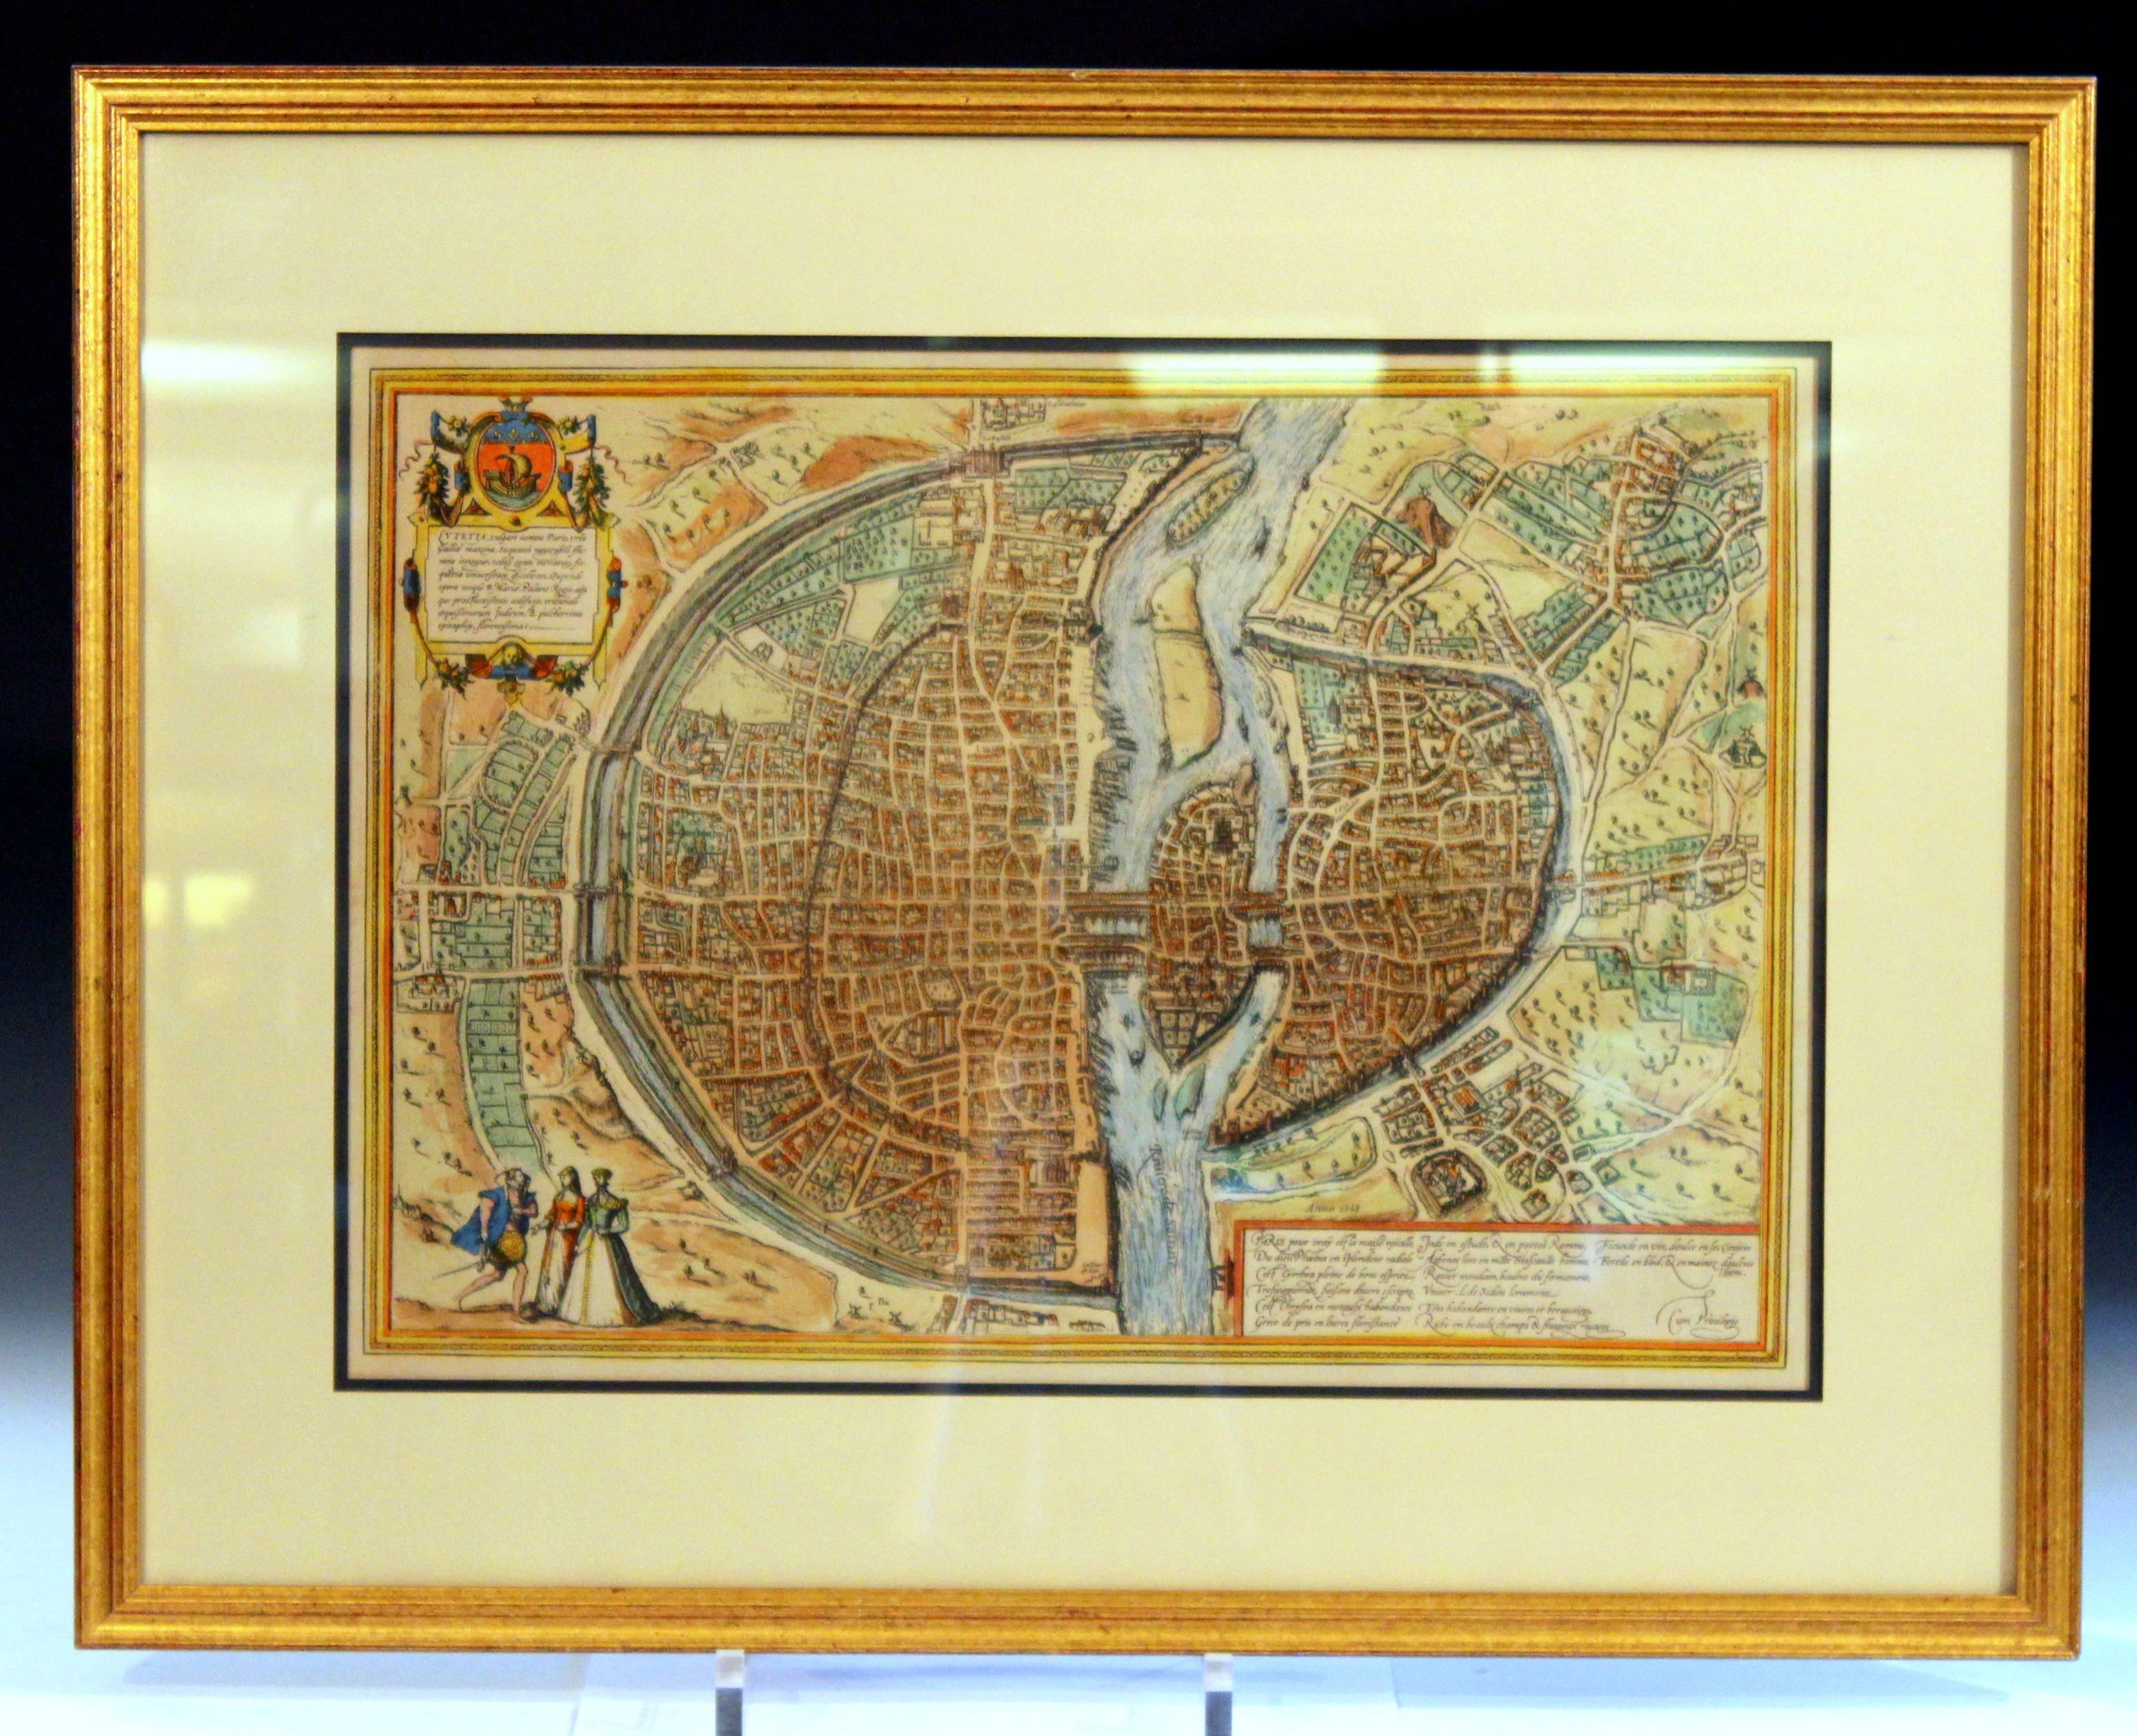 Gravure ancienne ou antique en couleur du plan de Paris de Munster de 1572, vers le XIXe ou le XXe siècle (le cadre n'a pas été ouvert pour rechercher une date de publication). De superbes graphismes et une carte ancienne vraiment intéressante.